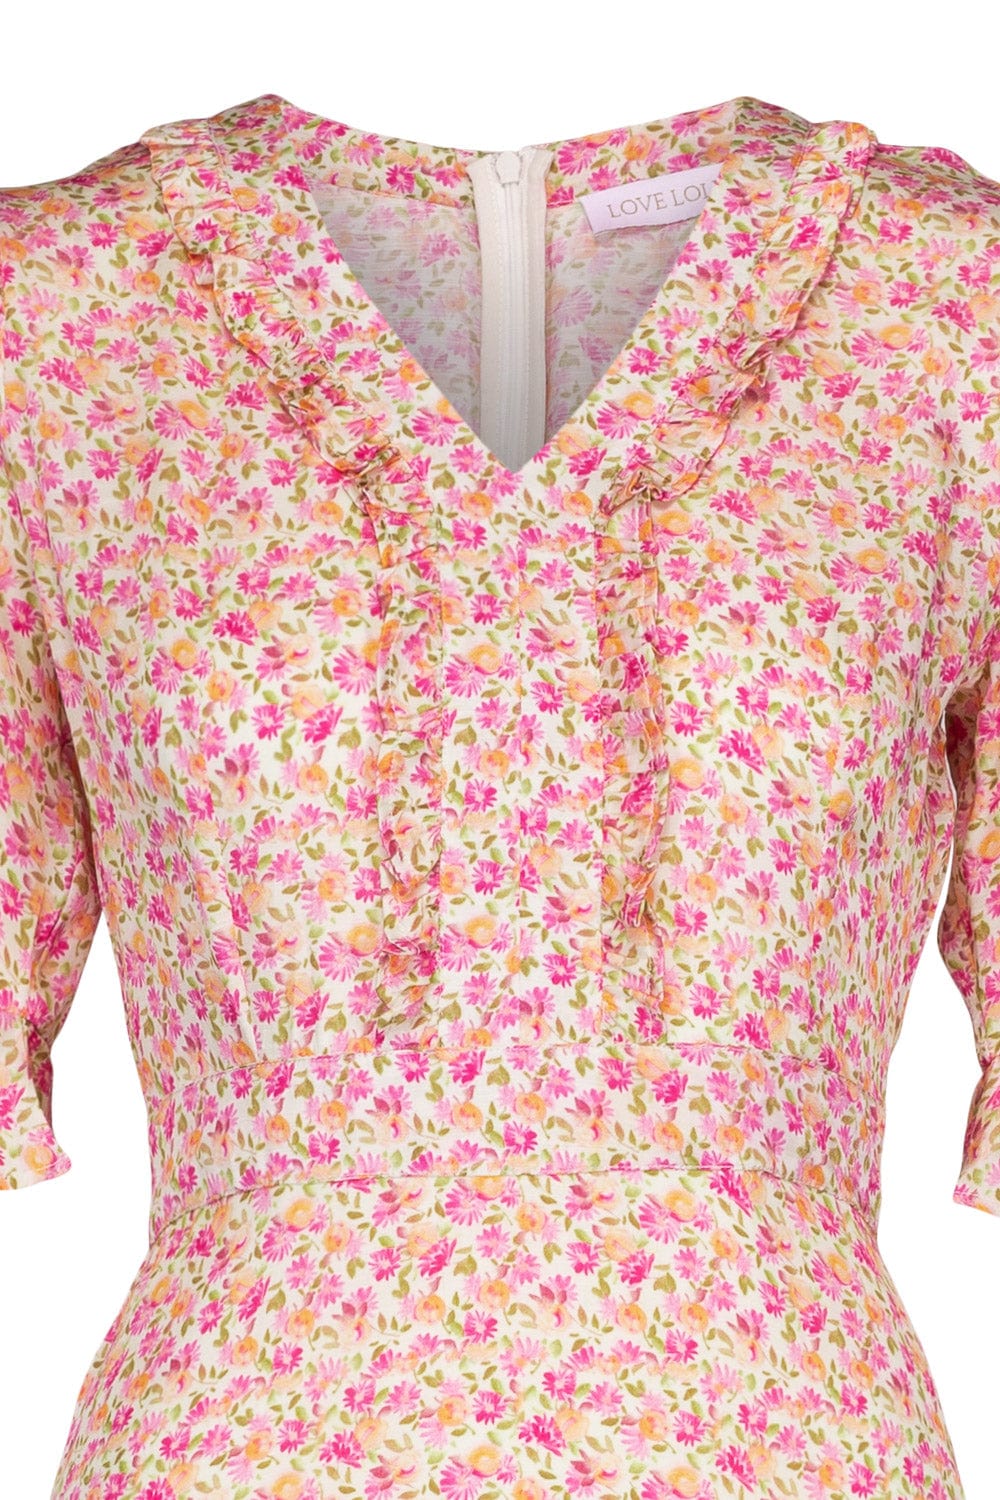 Catalina Maxi Dress Peachy Pink | Kjoler | Smuk - Dameklær på nett